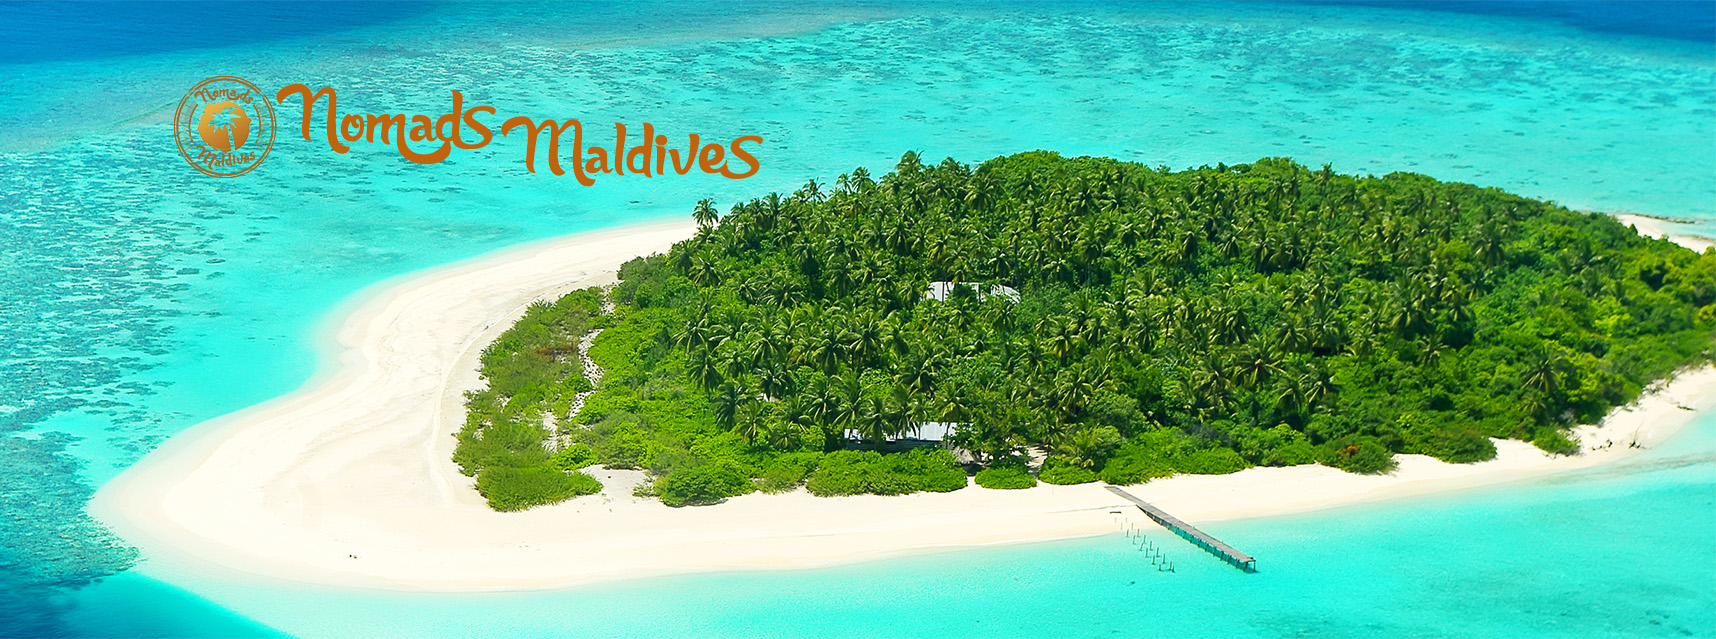 Nomads Maldives - Especialistas en viajes a Maldivas